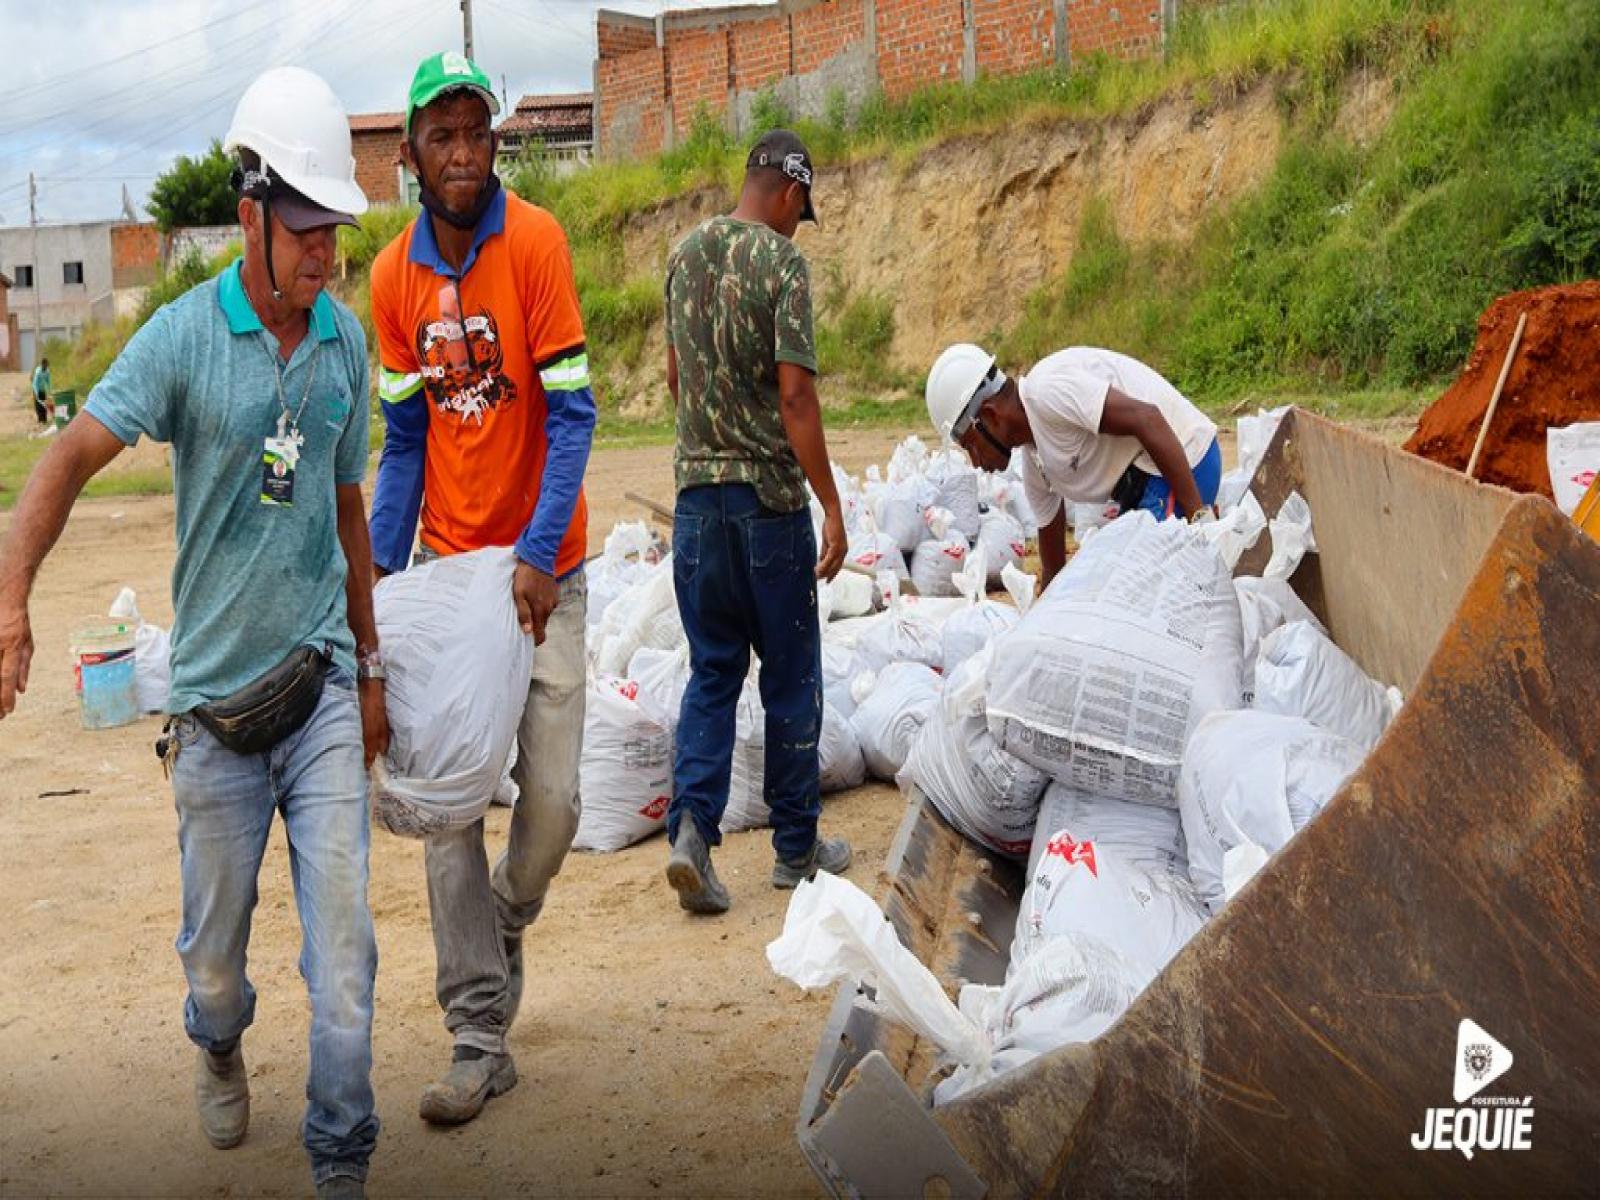 Prefeitura de Jequié inicia obra de contenção de encostas no bairro Brasil Novo